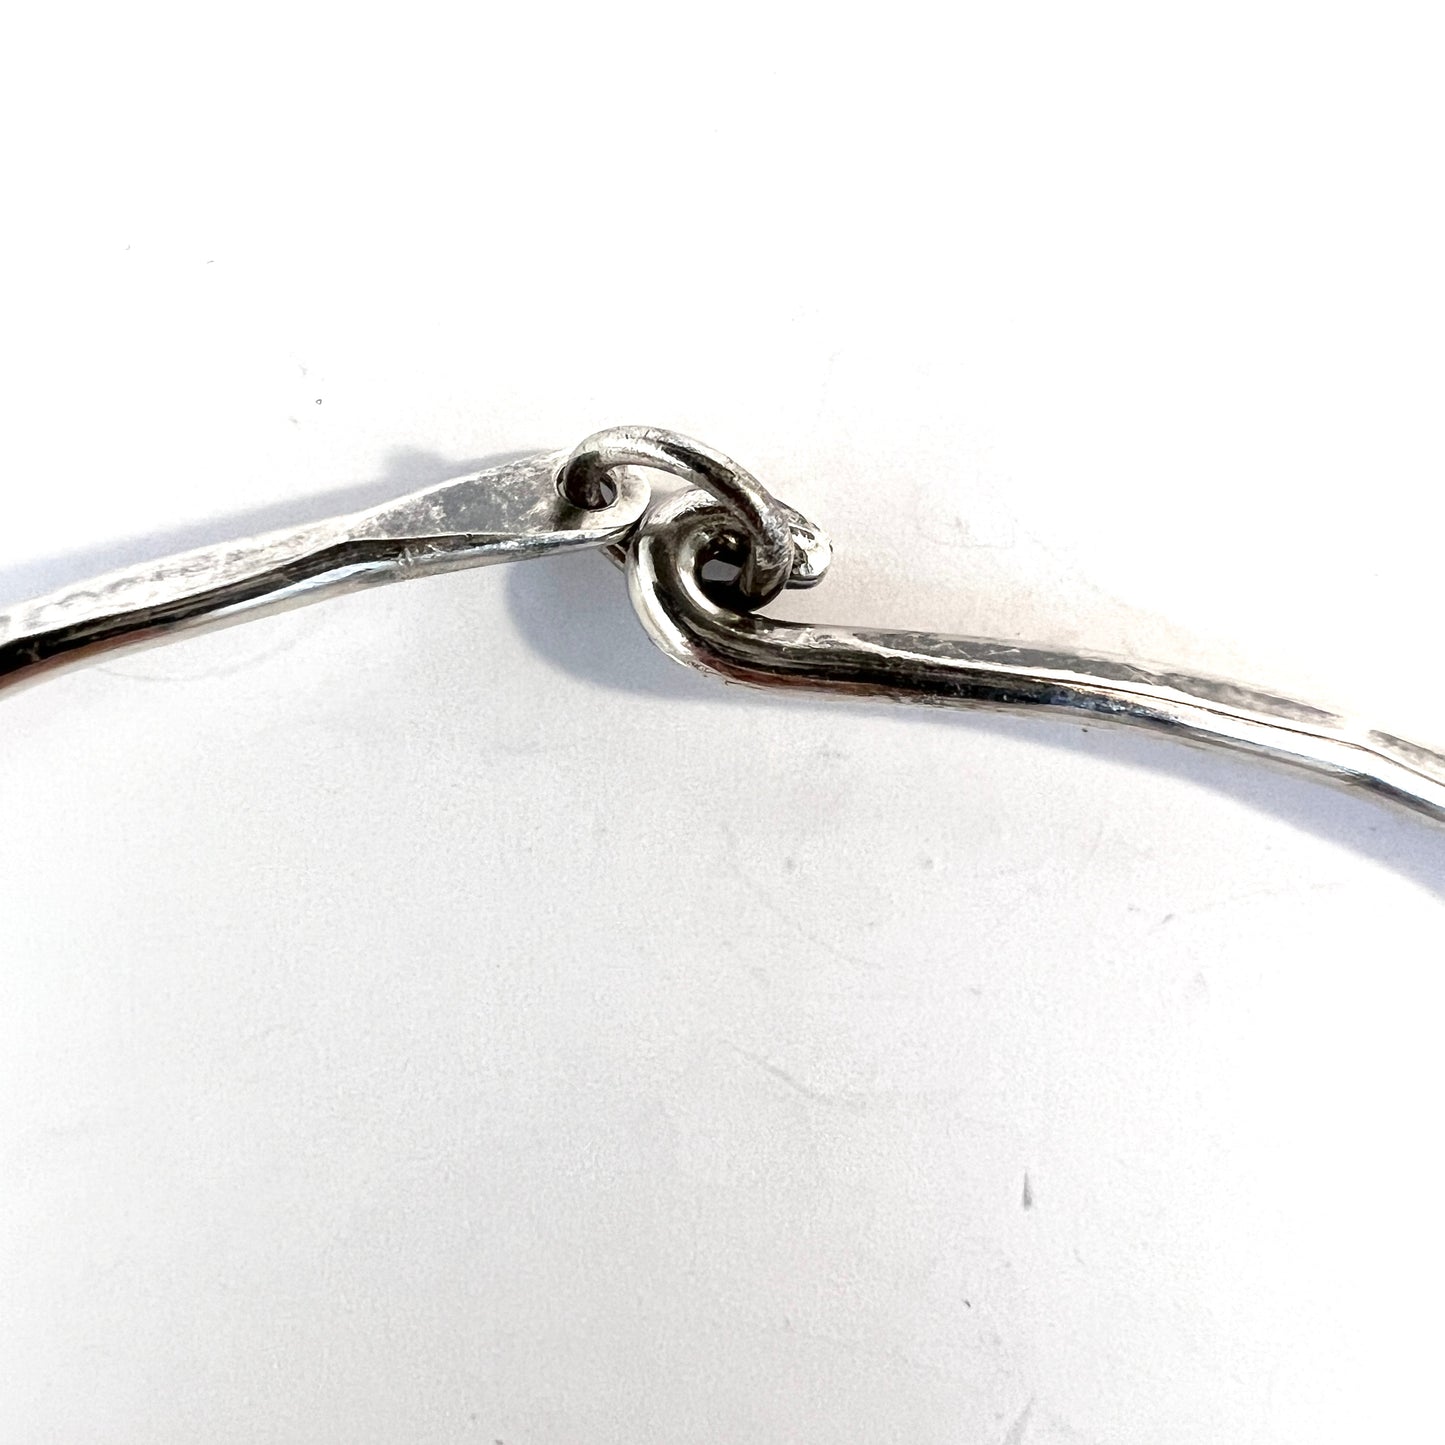 Kuhlin, Sweden 1991. Vintage Hammered Sterling Silver Neck Ring Necklace. Signed.